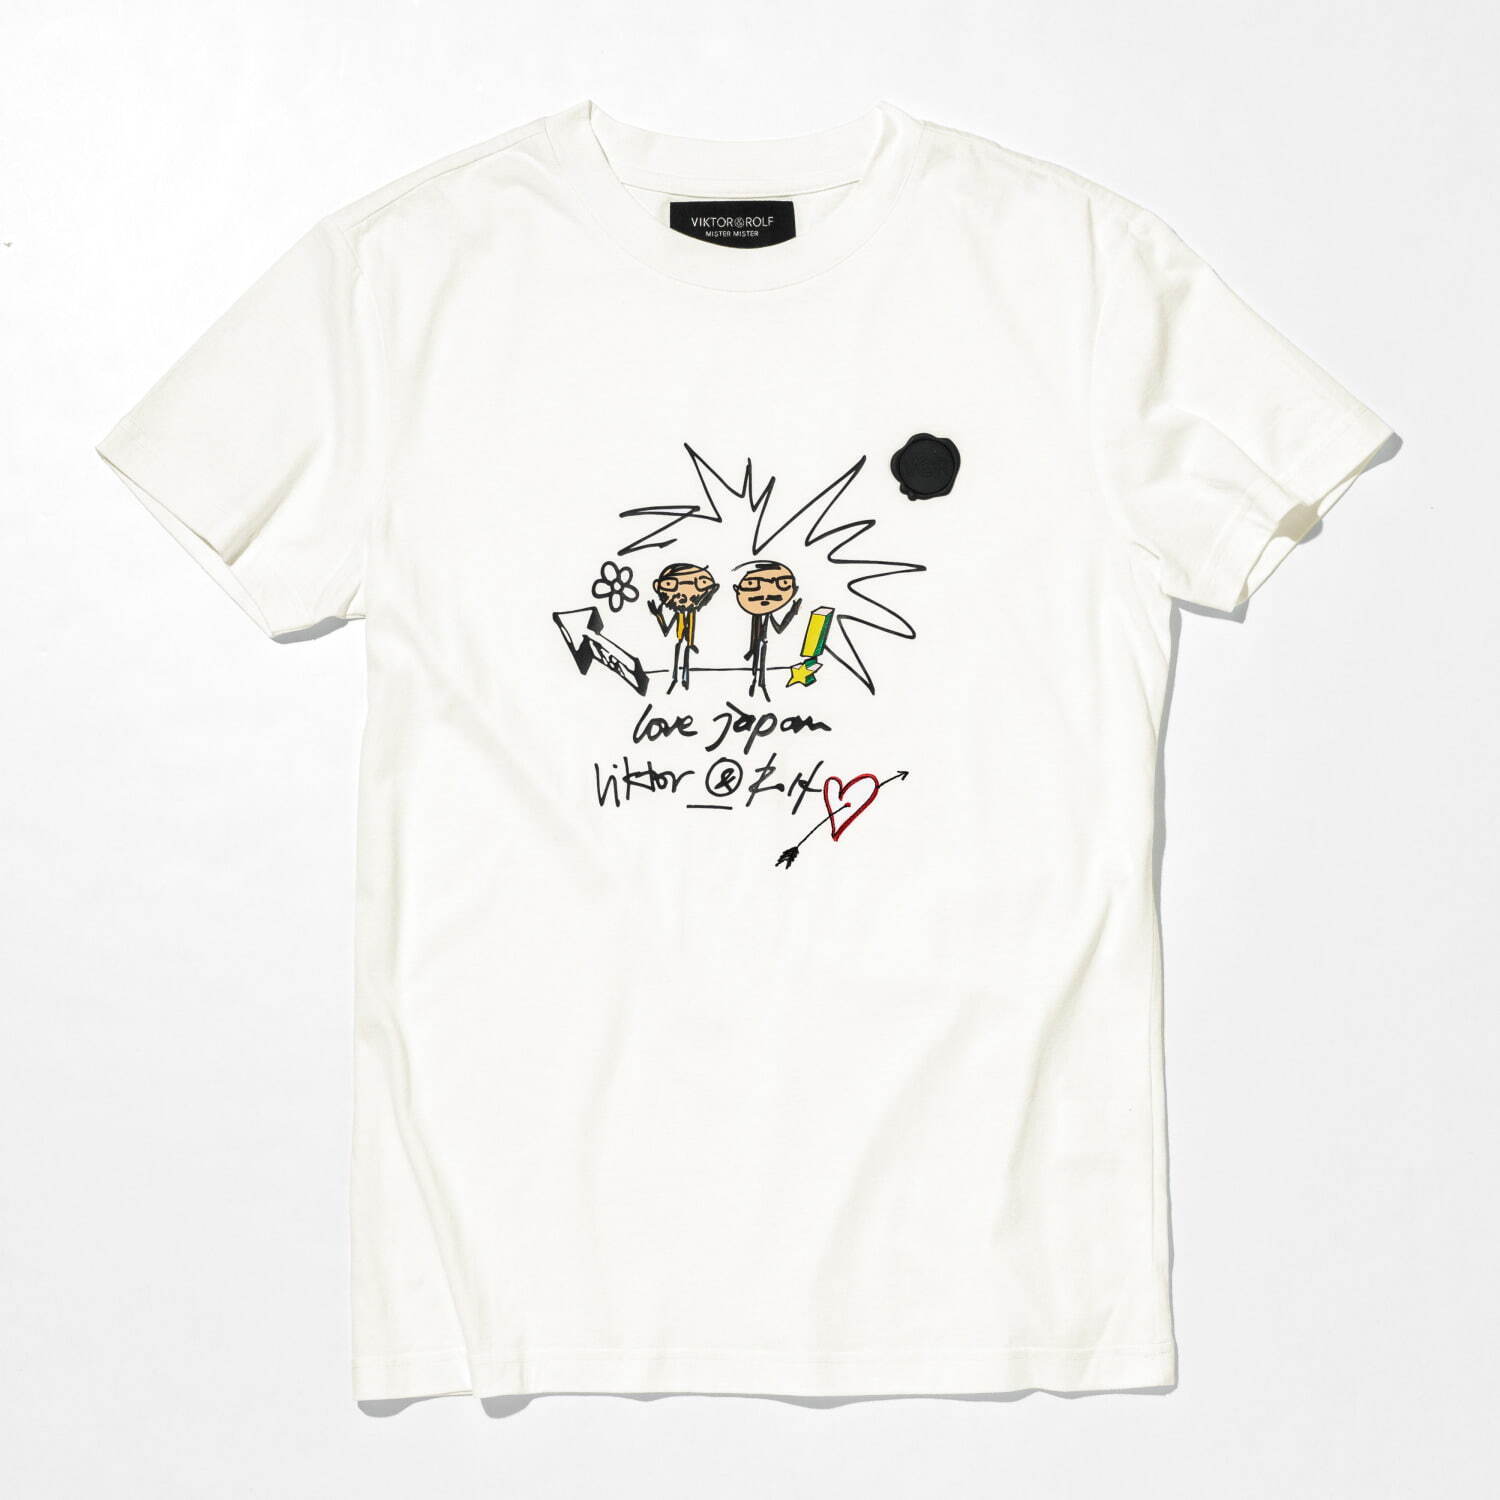 オリジナルデザインTシャツ 11,000円(税込)
